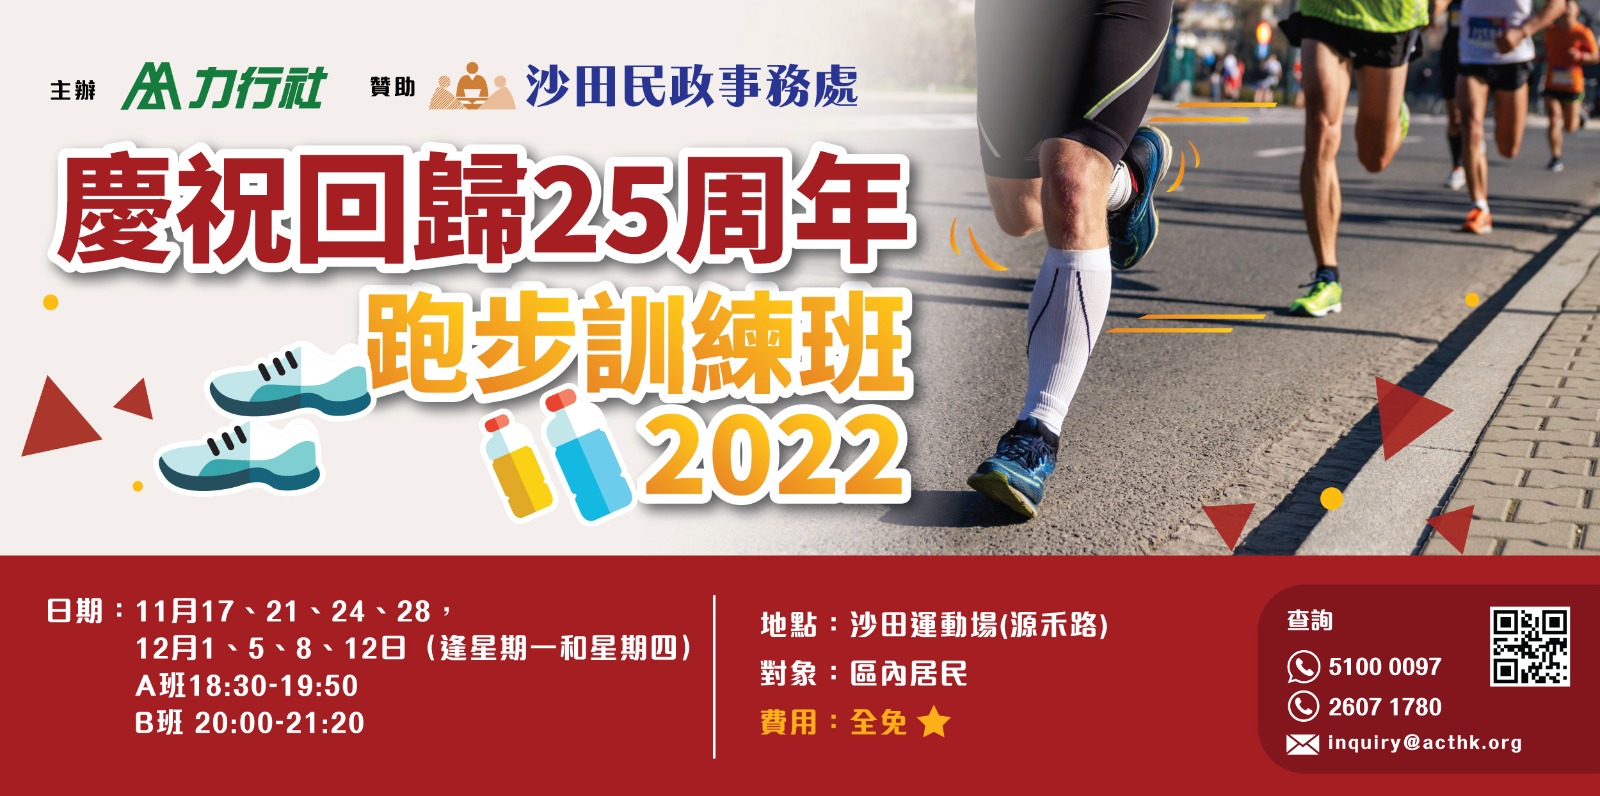 慶祝回歸25周年跑步訓練班2022